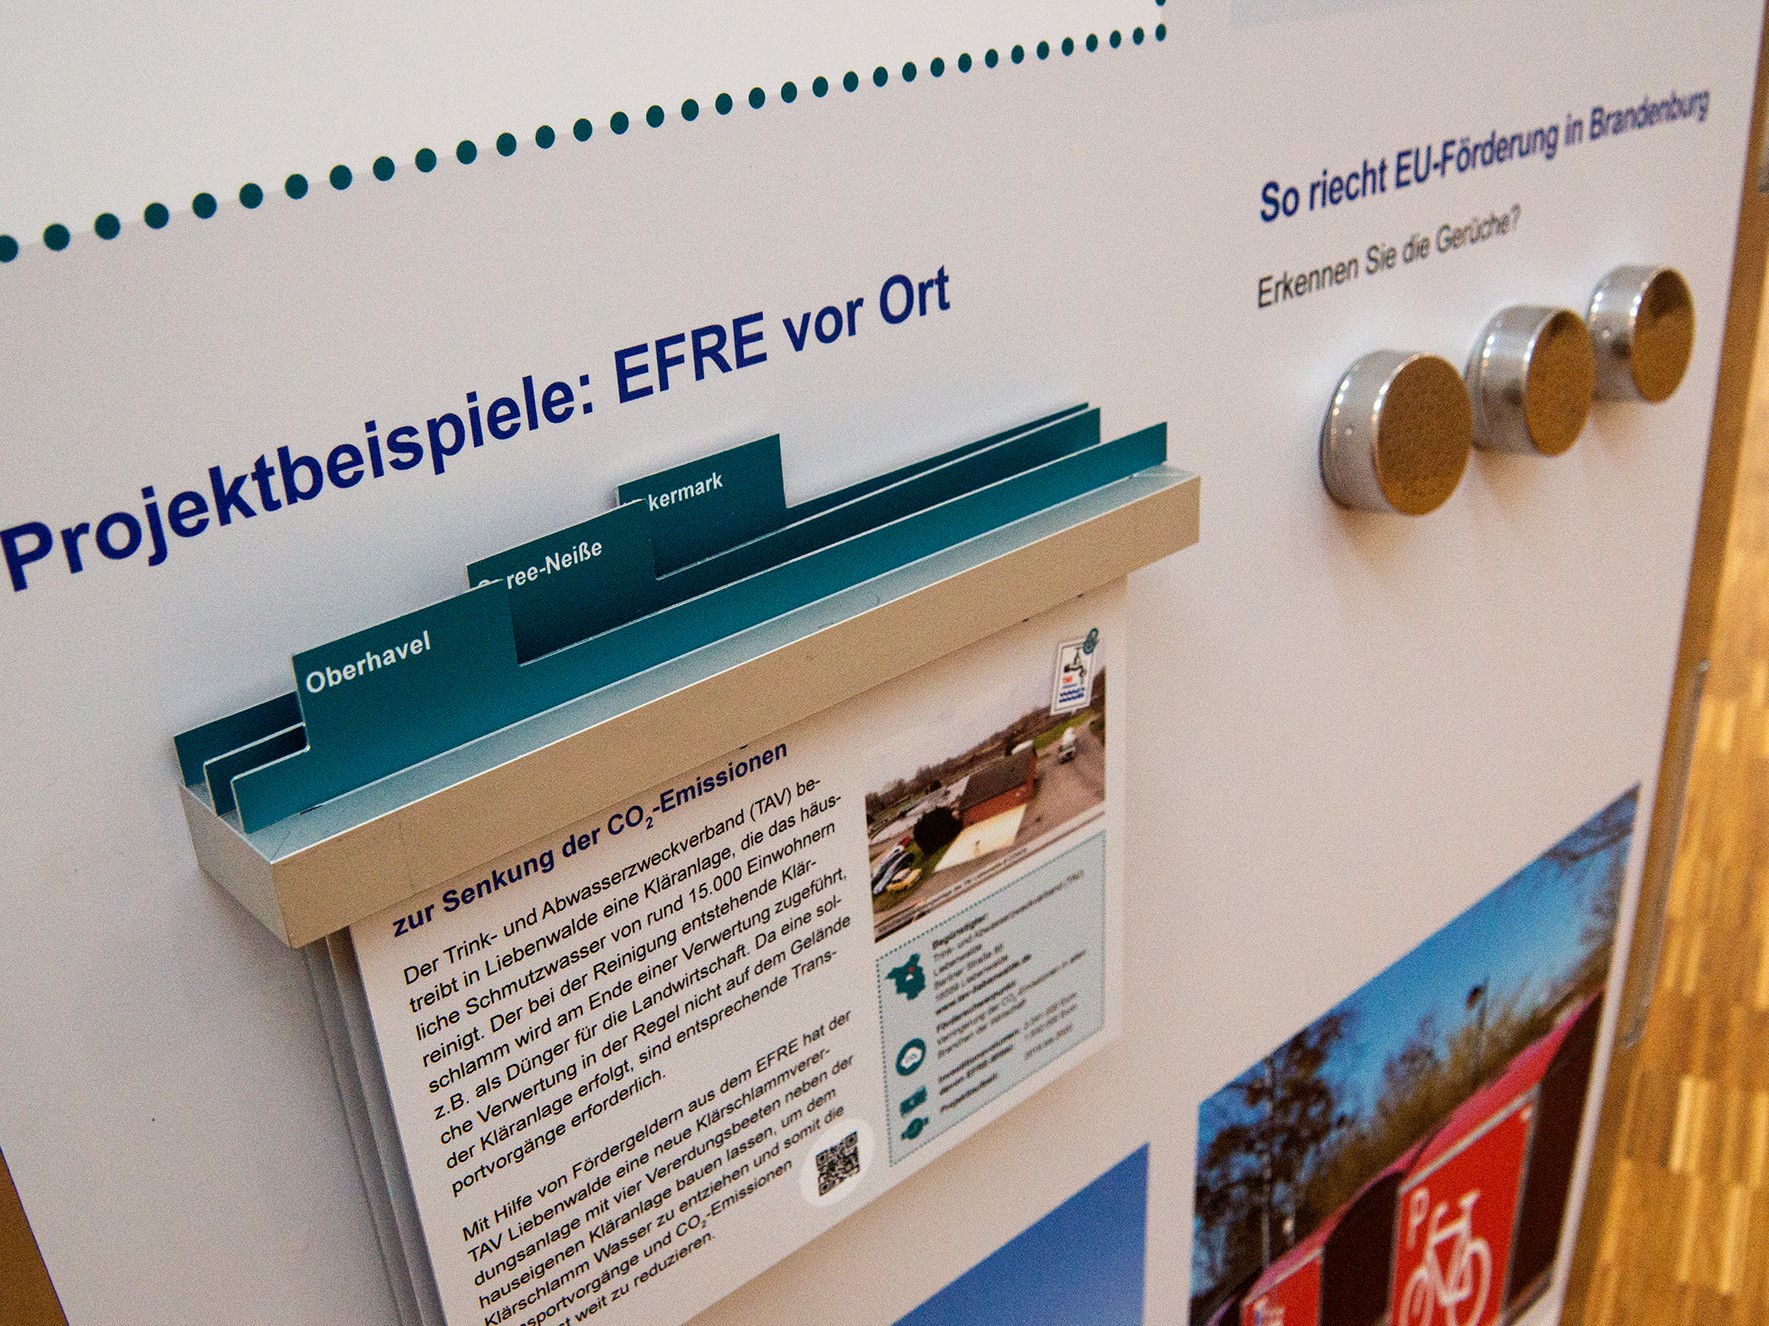 Bild: Detailaufnahme der EFRE-Wanderausstellung mit Projekttafeln und Riechelementen